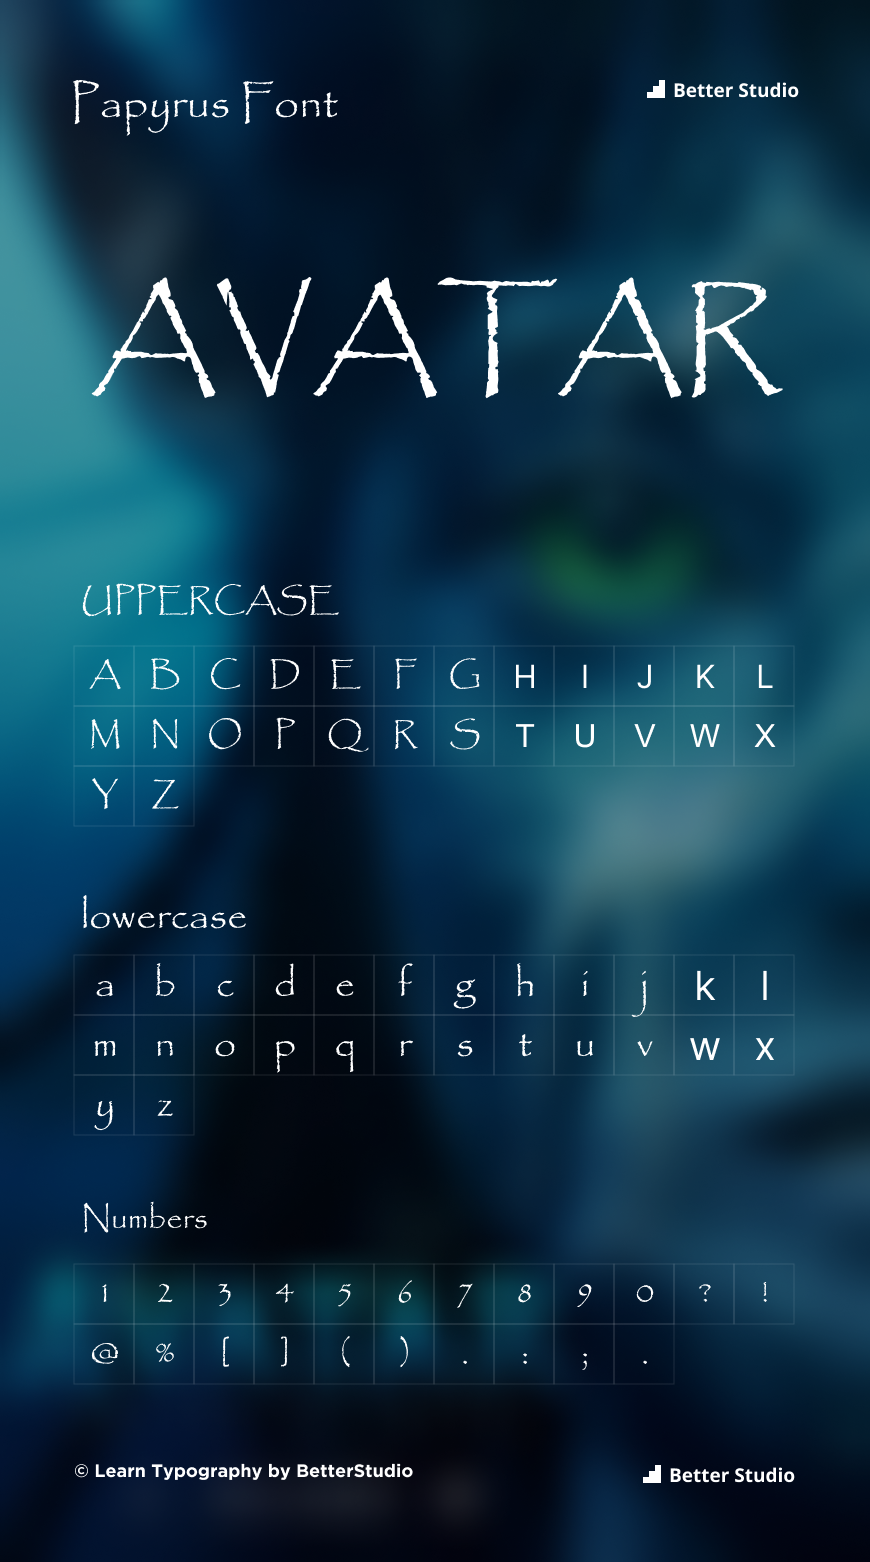 Avatar Font Generator  FREE Download  FontBolt